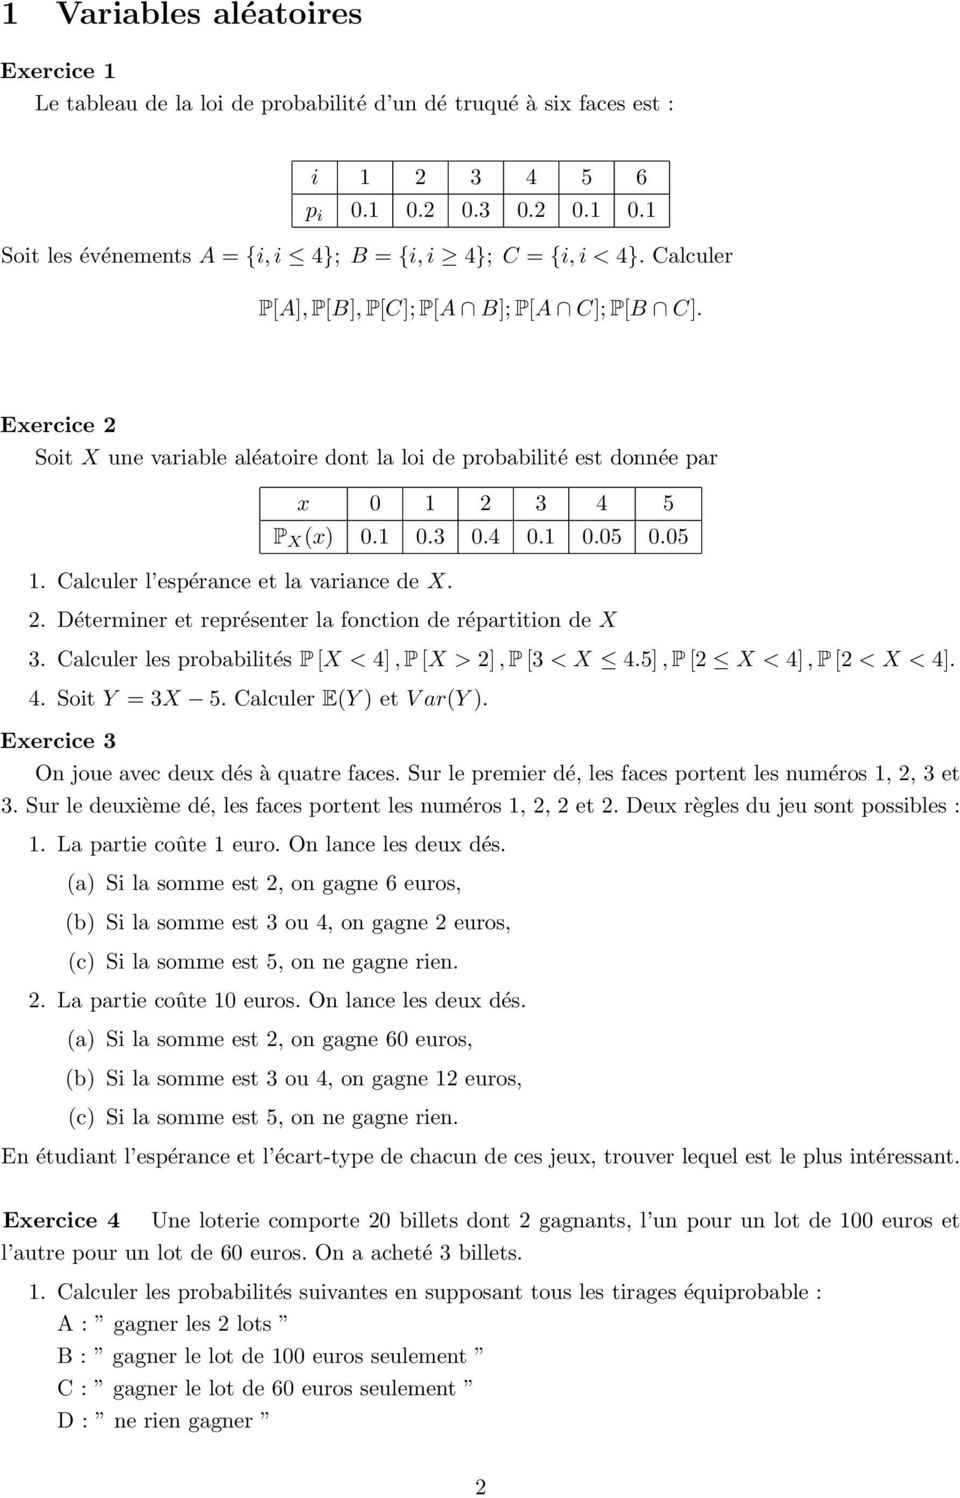 x 0 1 2 3 4 5 P X (x) 0.1 0.3 0.4 0.1 0.05 0.05 2. Déterminer et représenter la fonction de répartition de X 3. Calculer les probabilités P [X < 4], P [X > 2], P [3 < X 4.